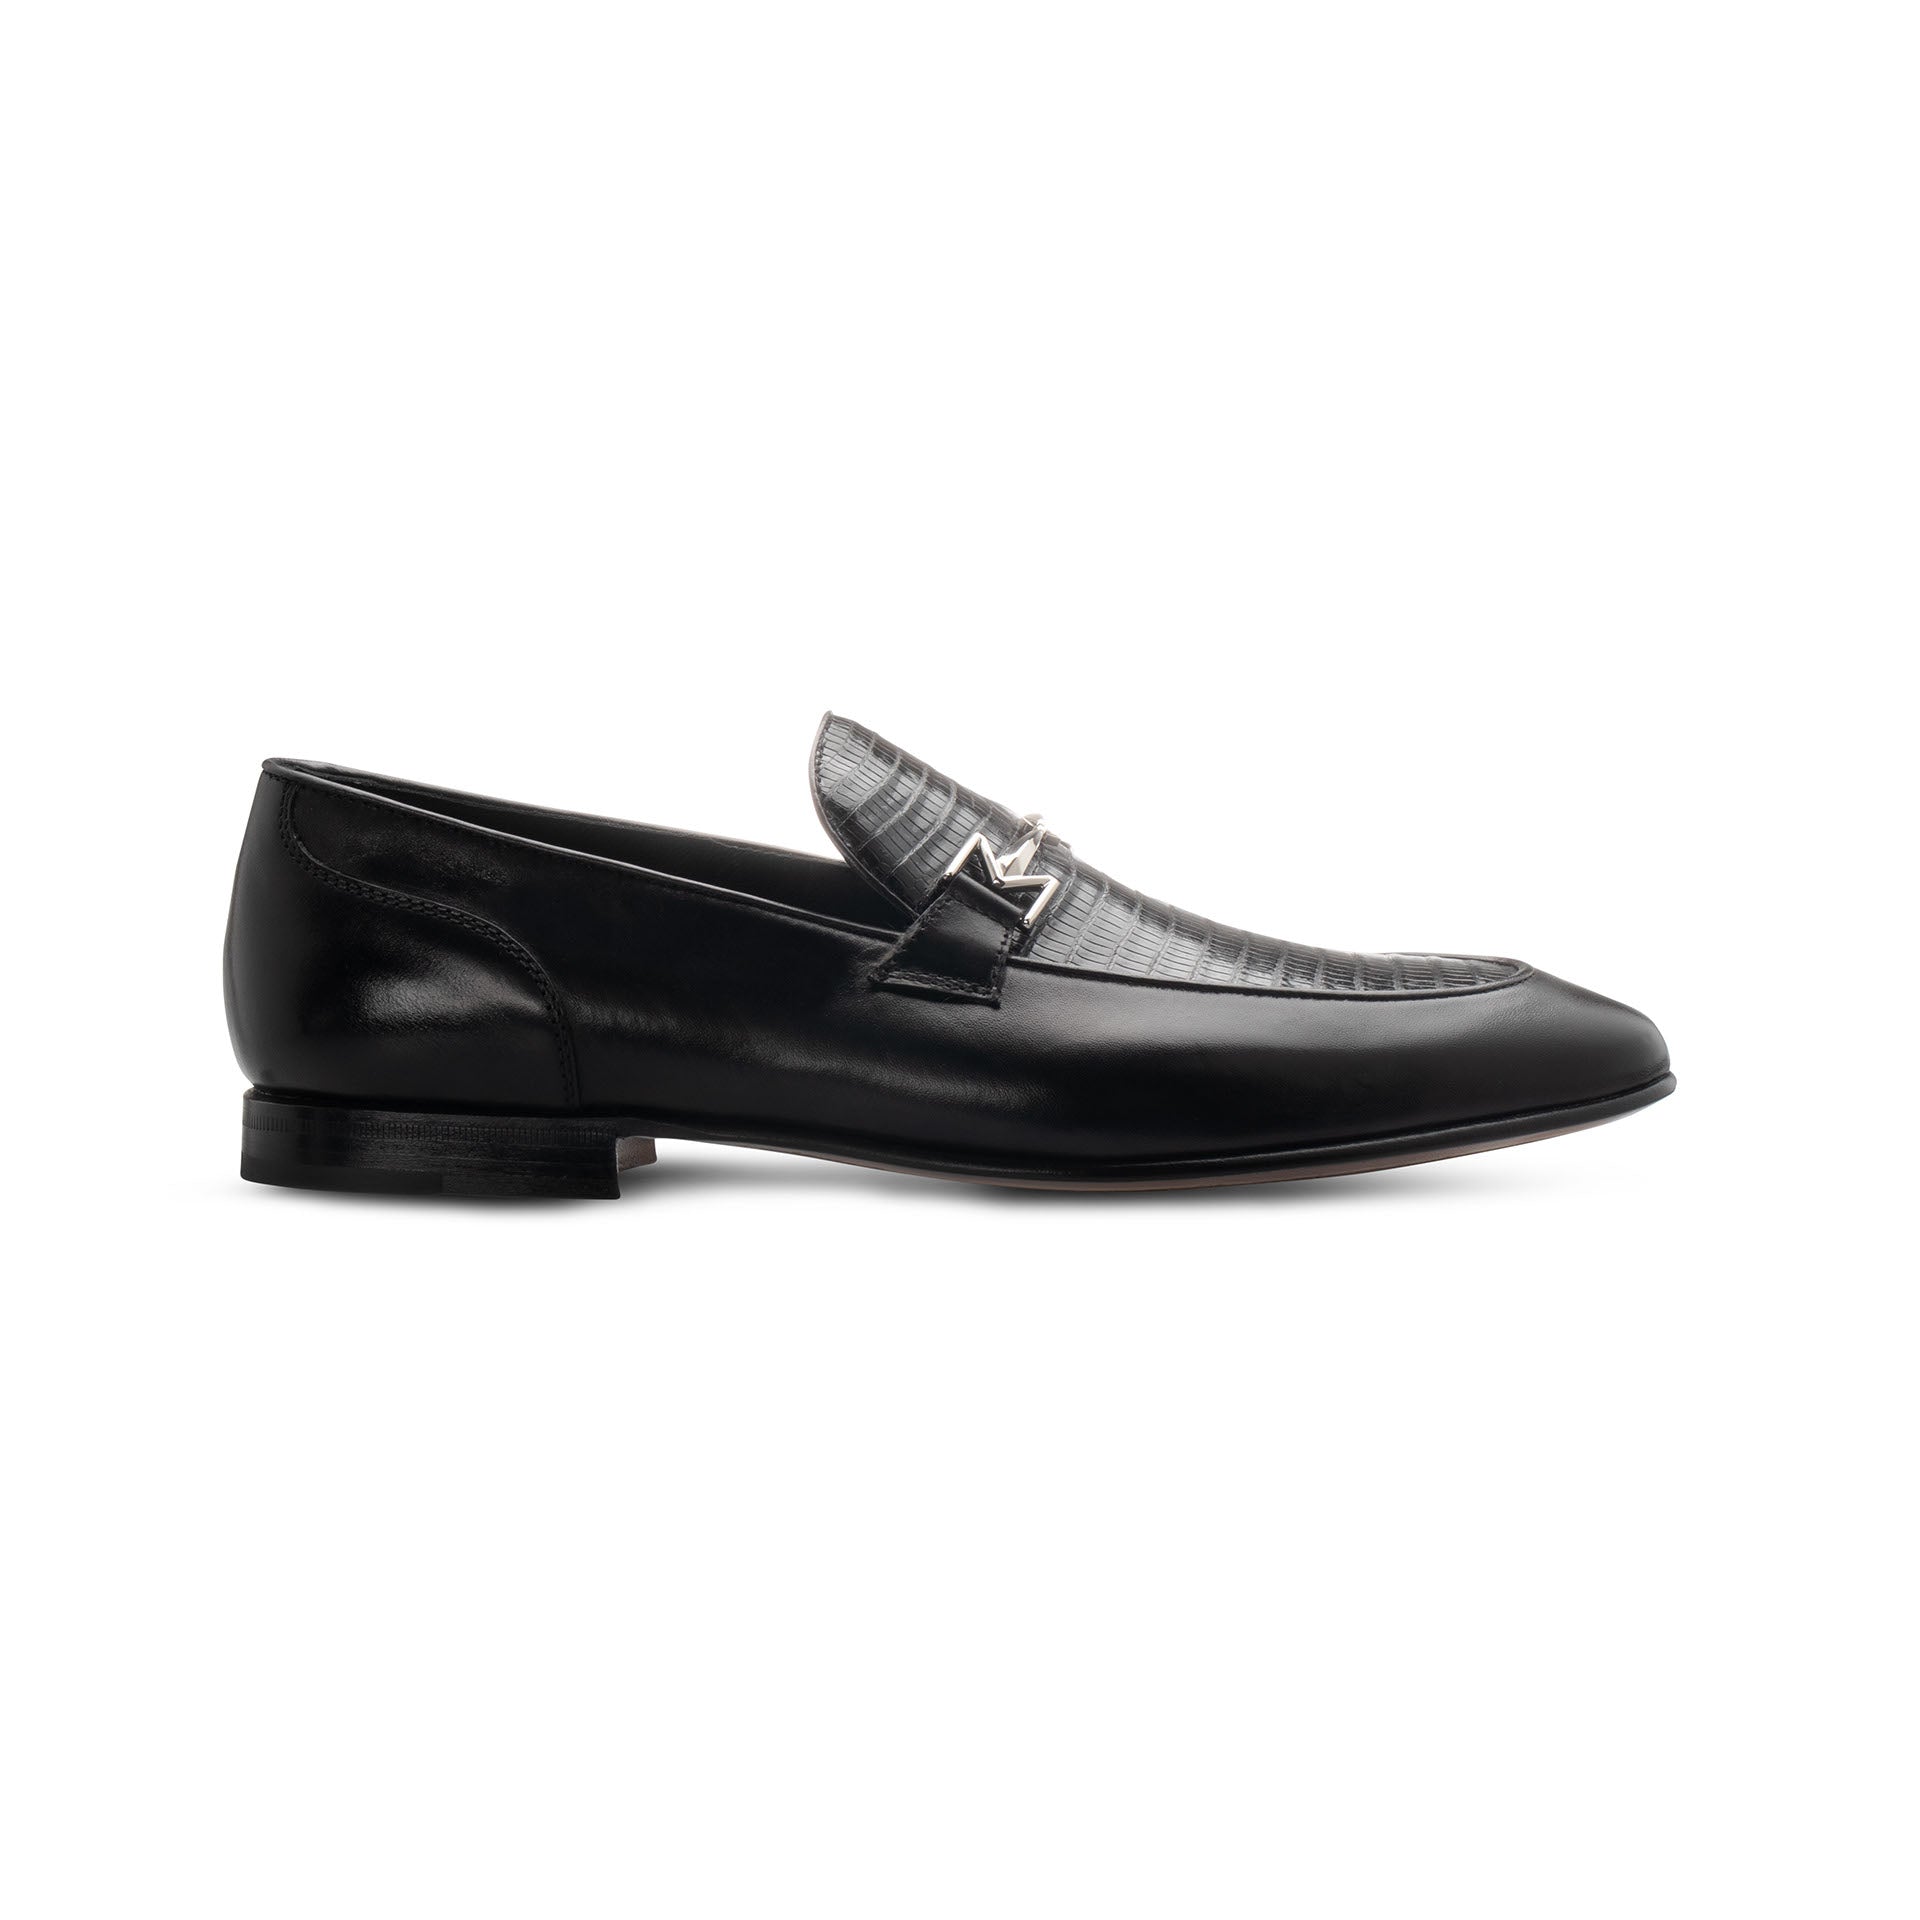 Black leather Loafer – Moreschi